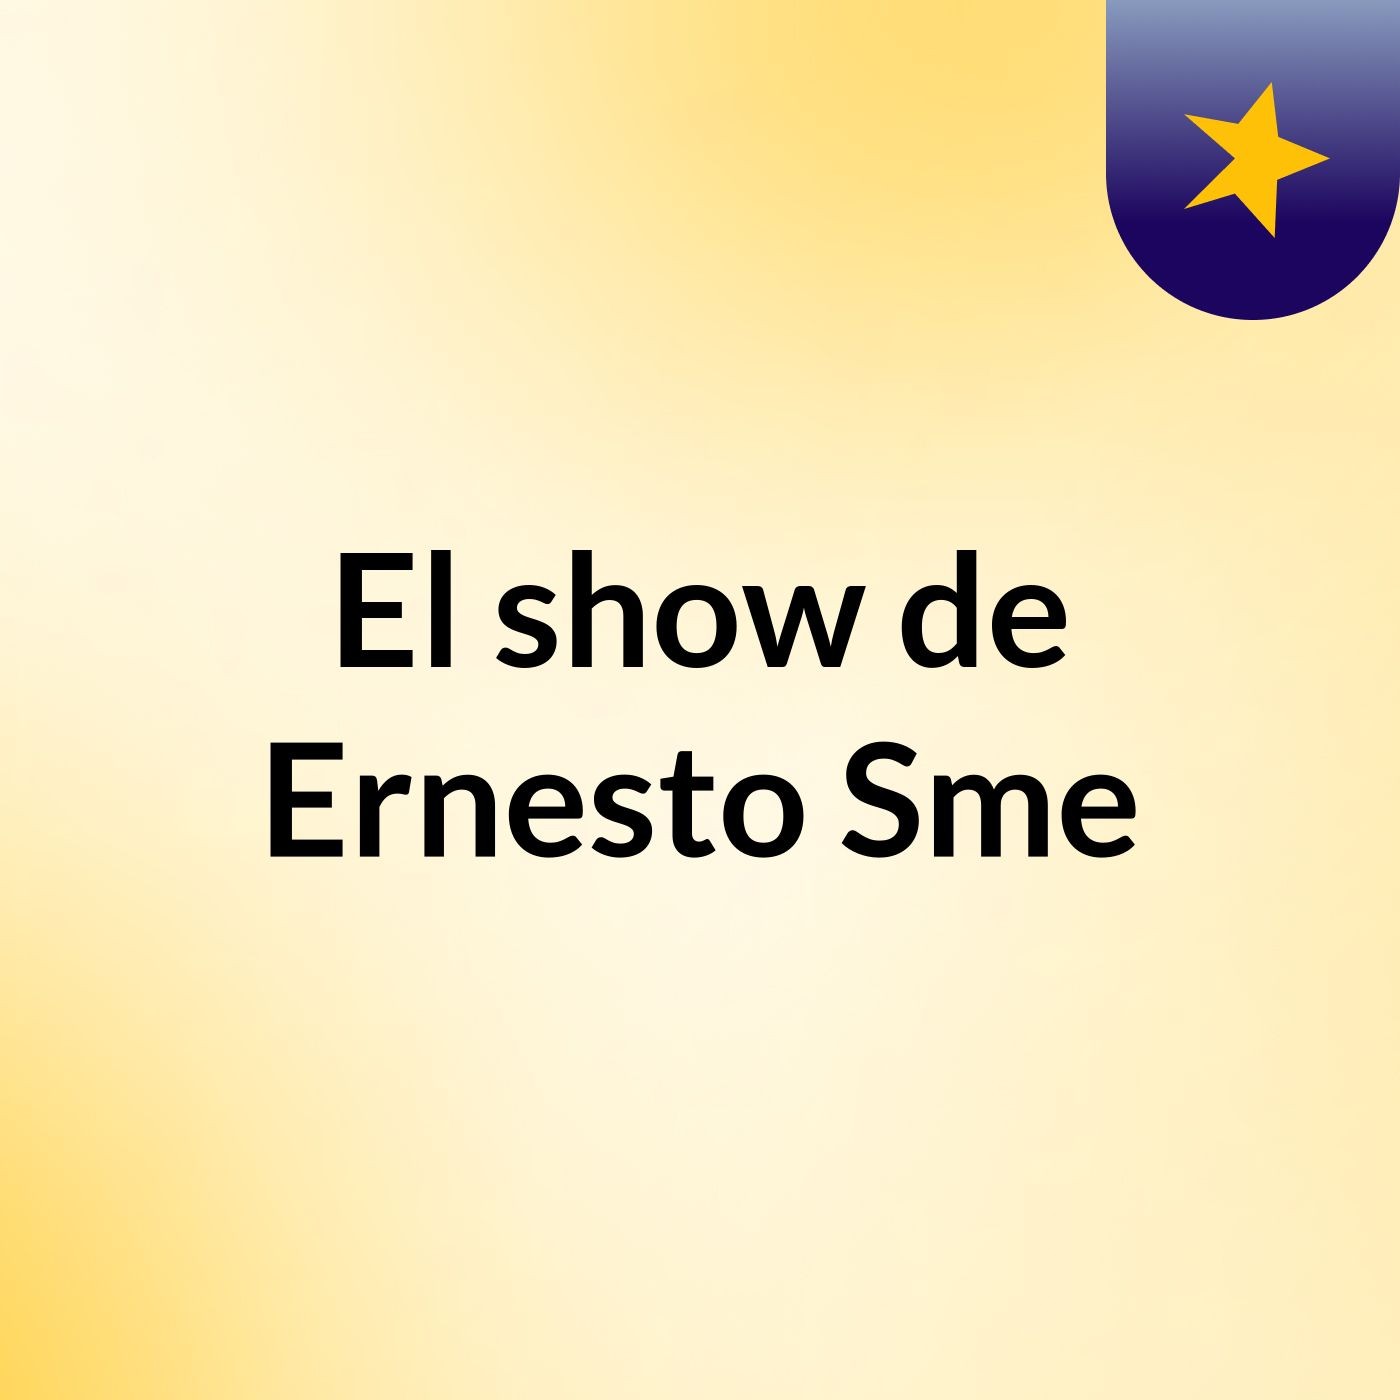 El show de Ernesto Sme